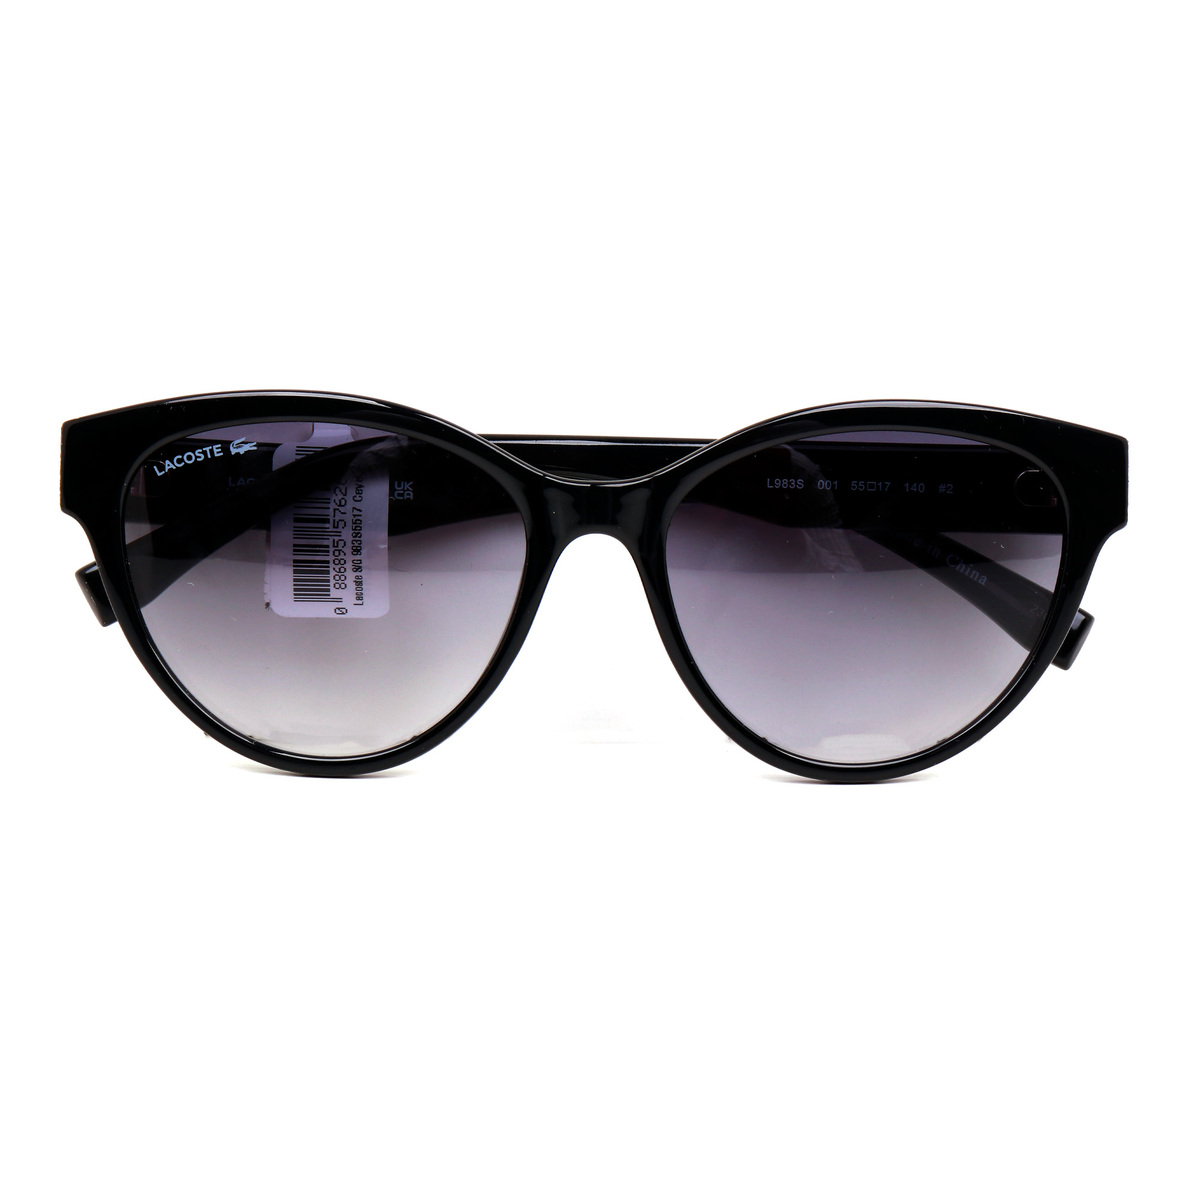 Lacoste Women's Cateye Sunglasses, Grey, 983S5517